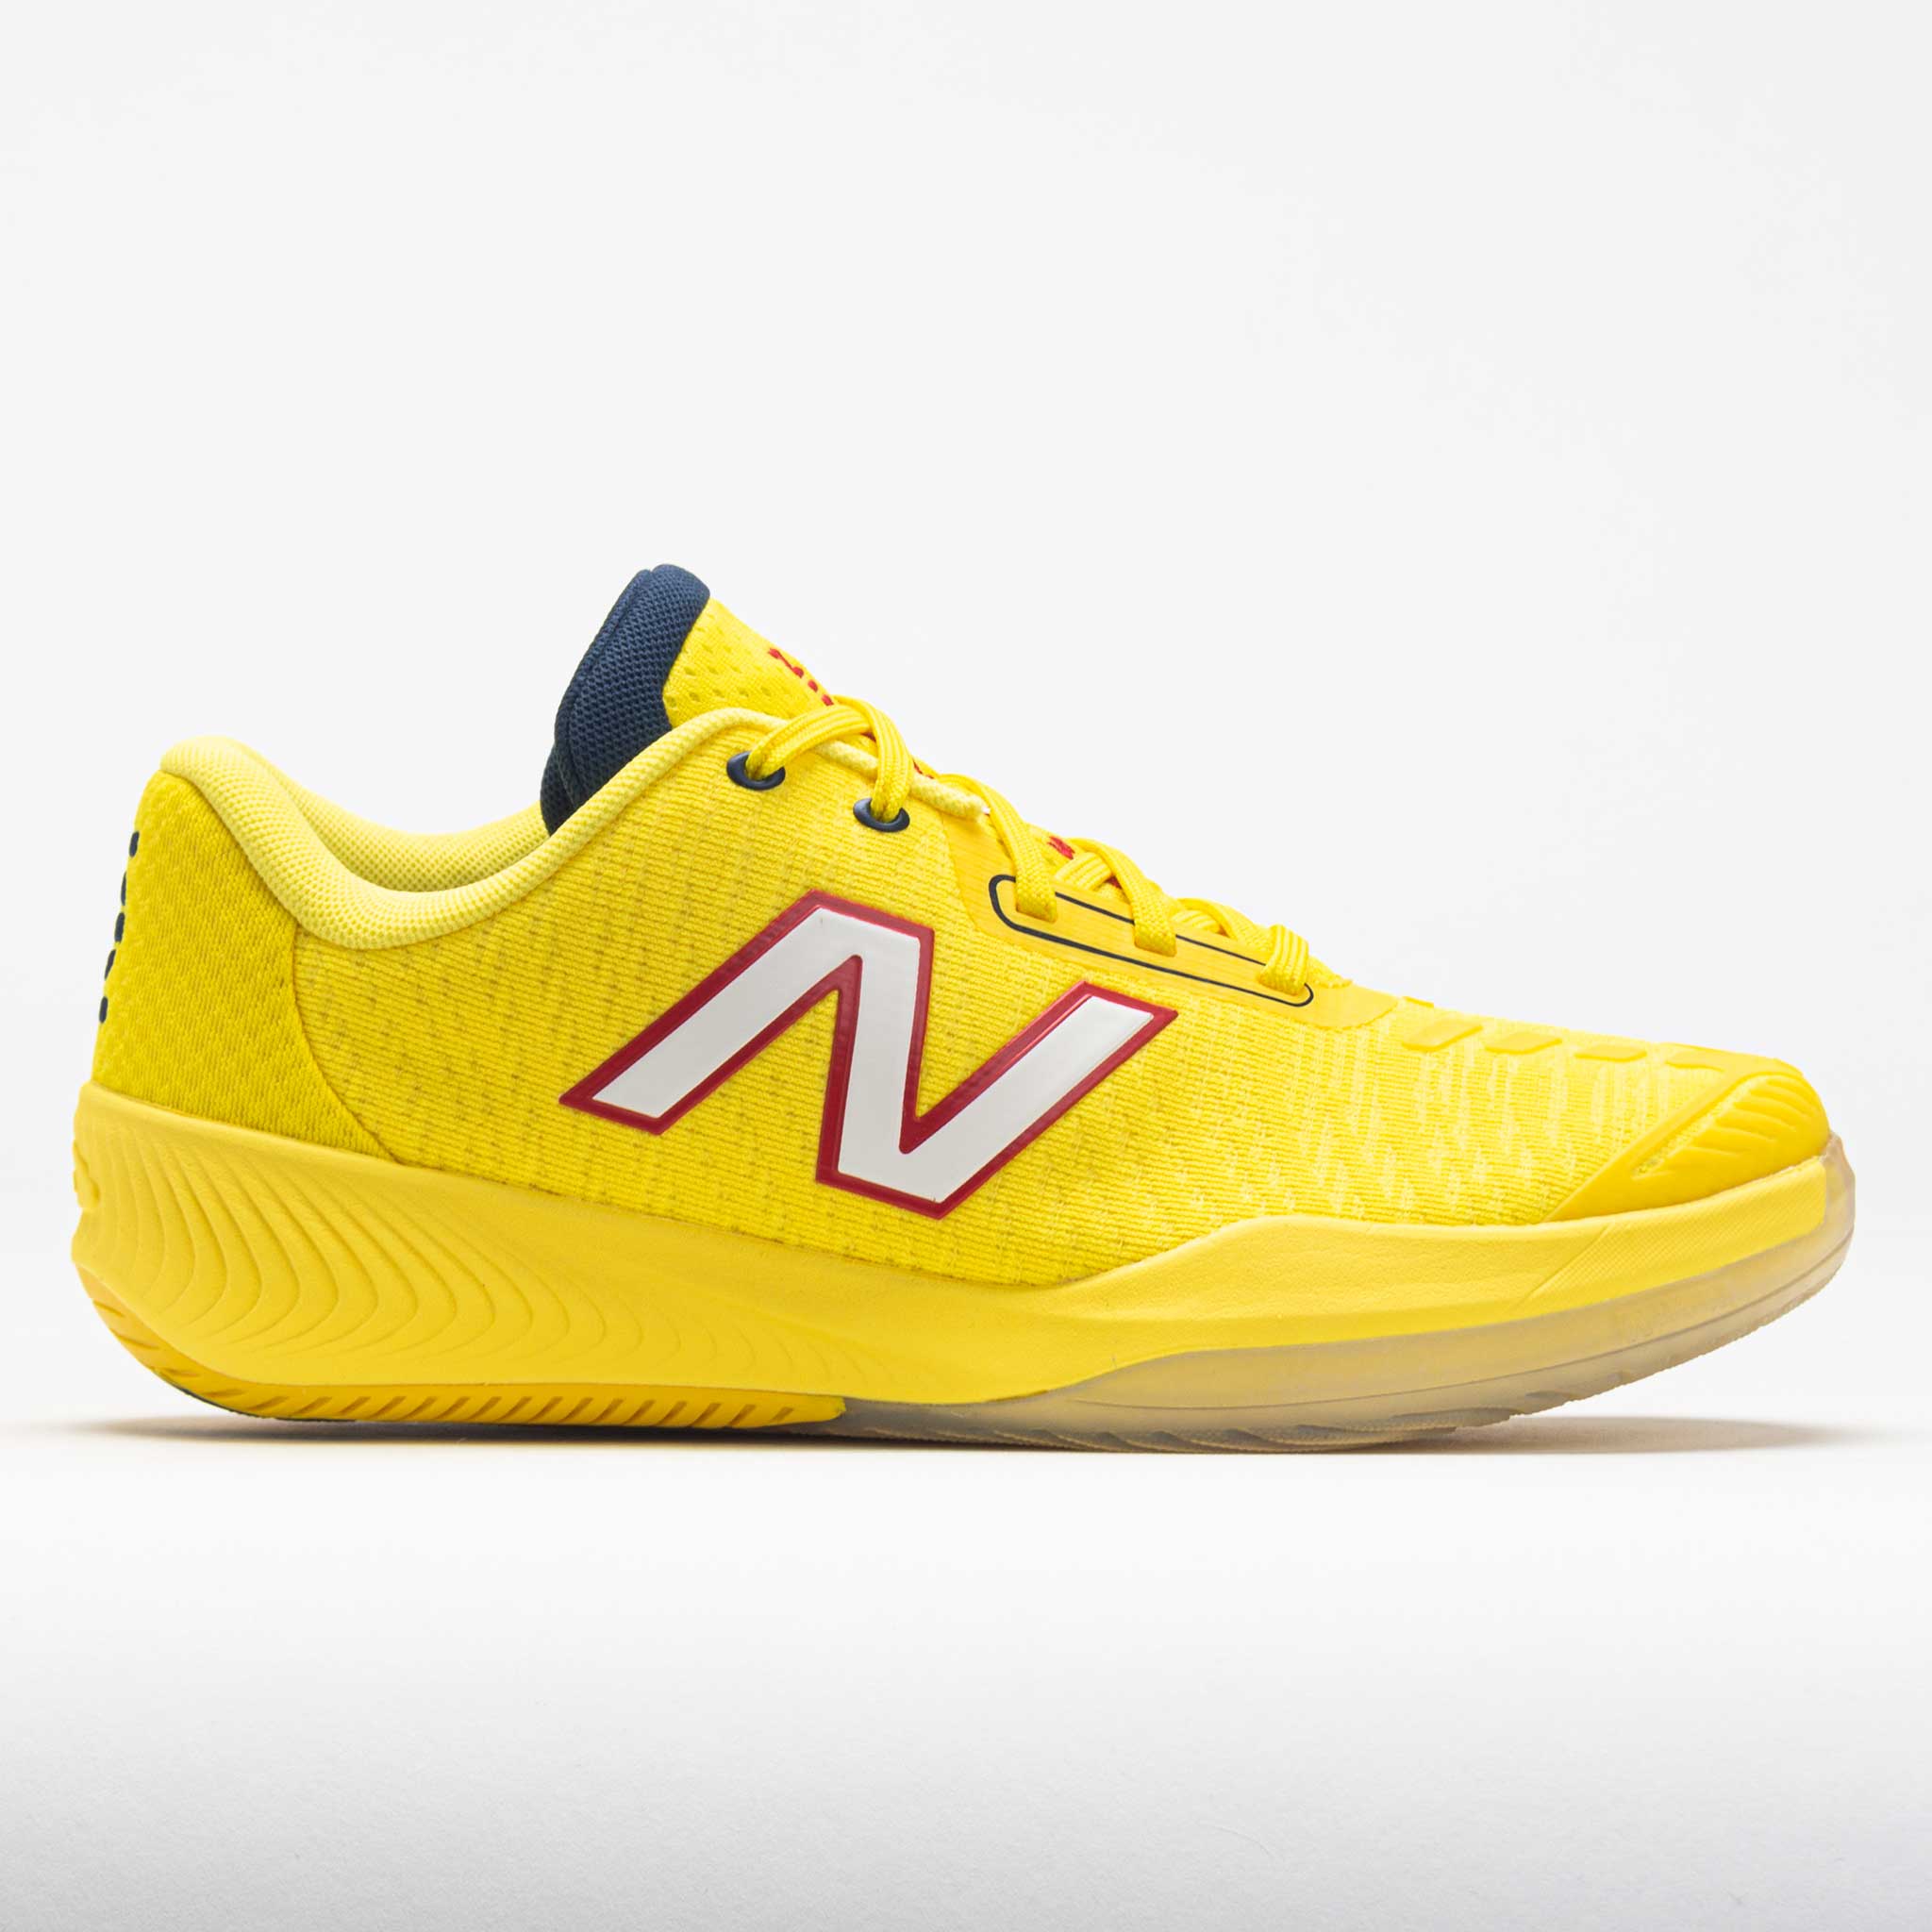 New Balance 996v5 Women's Tennis Shoes Ginger Lemon/White/Navy Size 8.5 ...